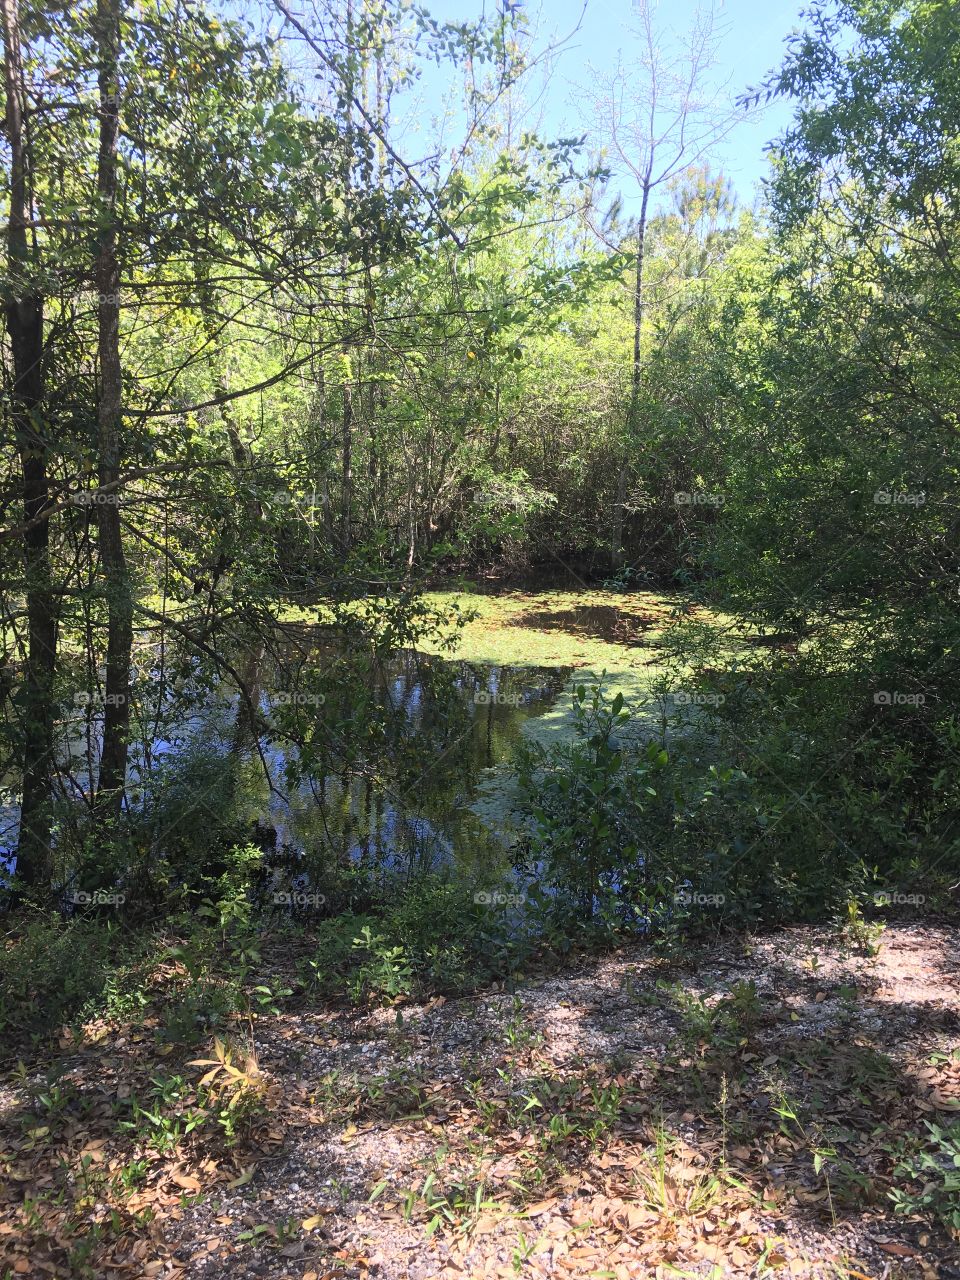 A hidden pond